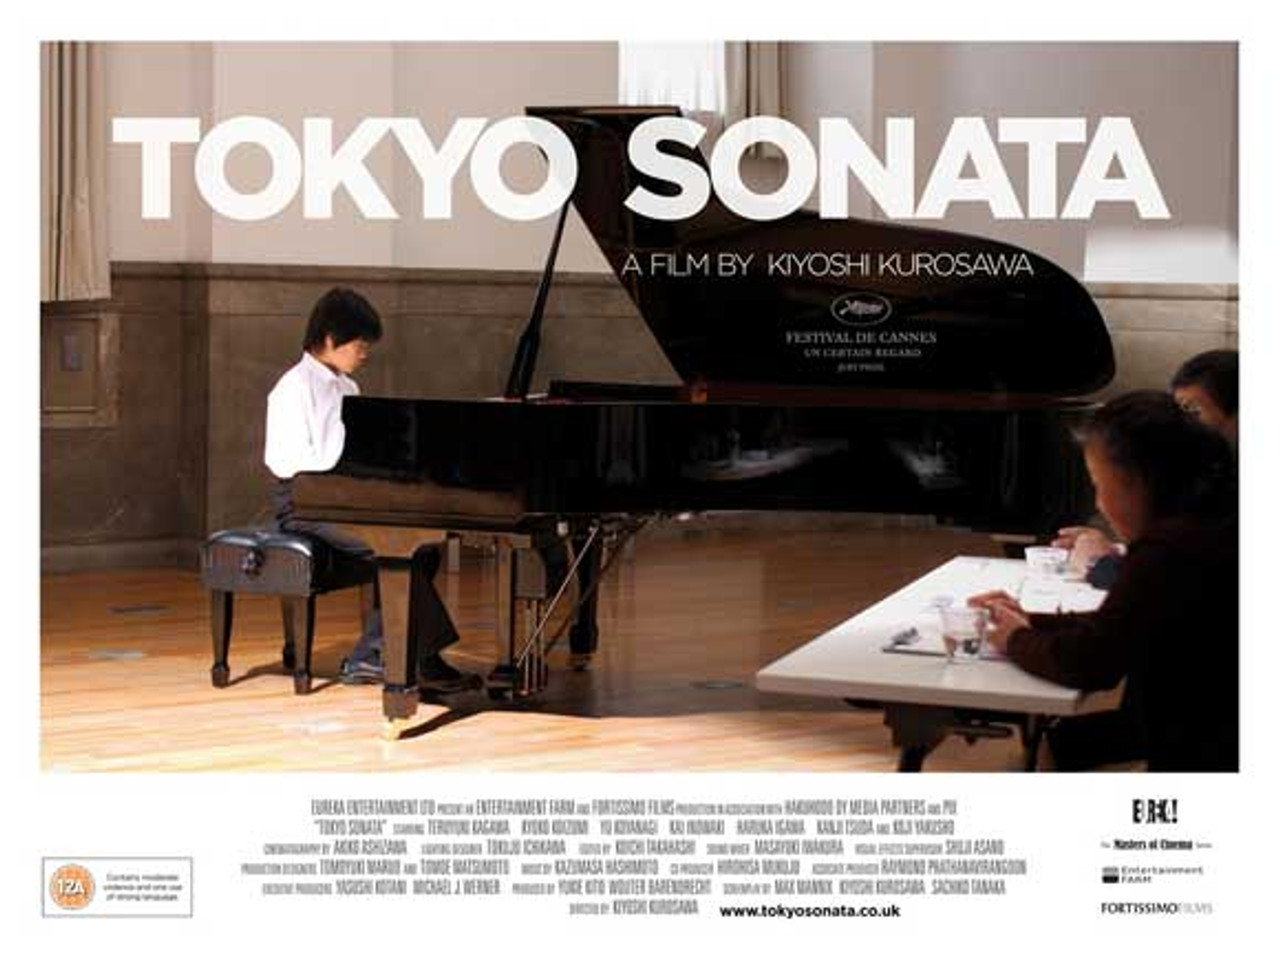 grand piano movie poster